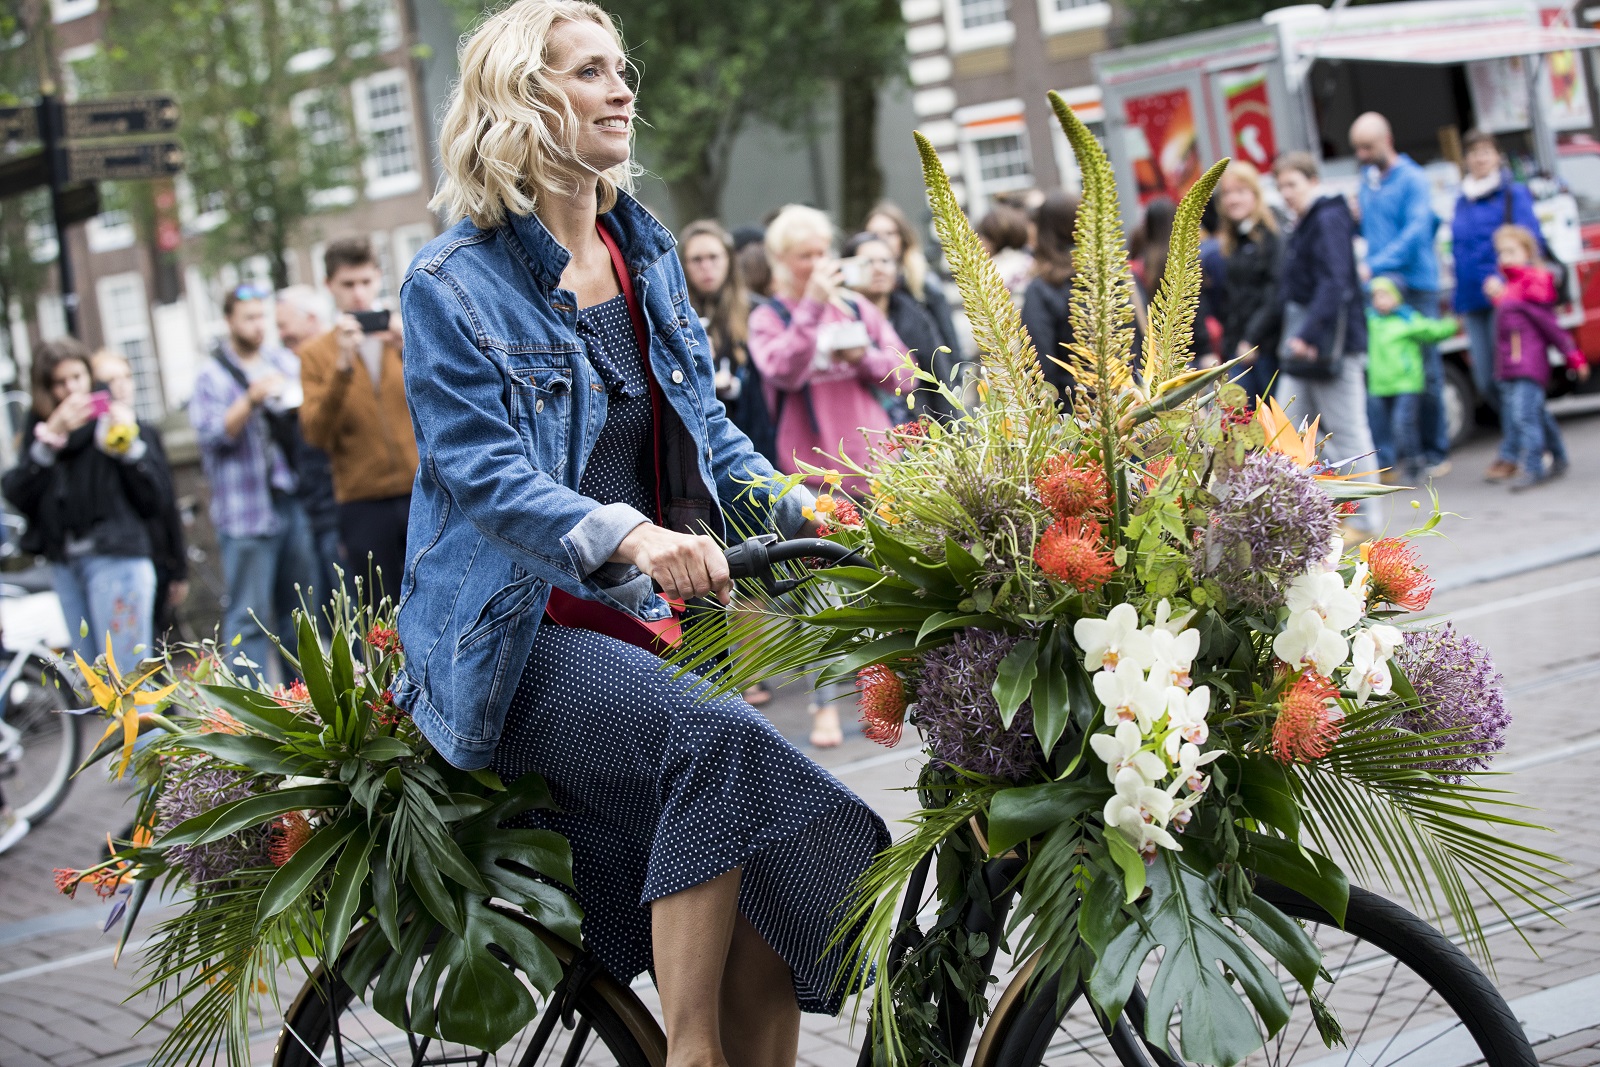 "كيمبتون دي ويت" يطلق حملةً في شوارع المدينة لتزيين الدراجات الهوائية بالأزهار